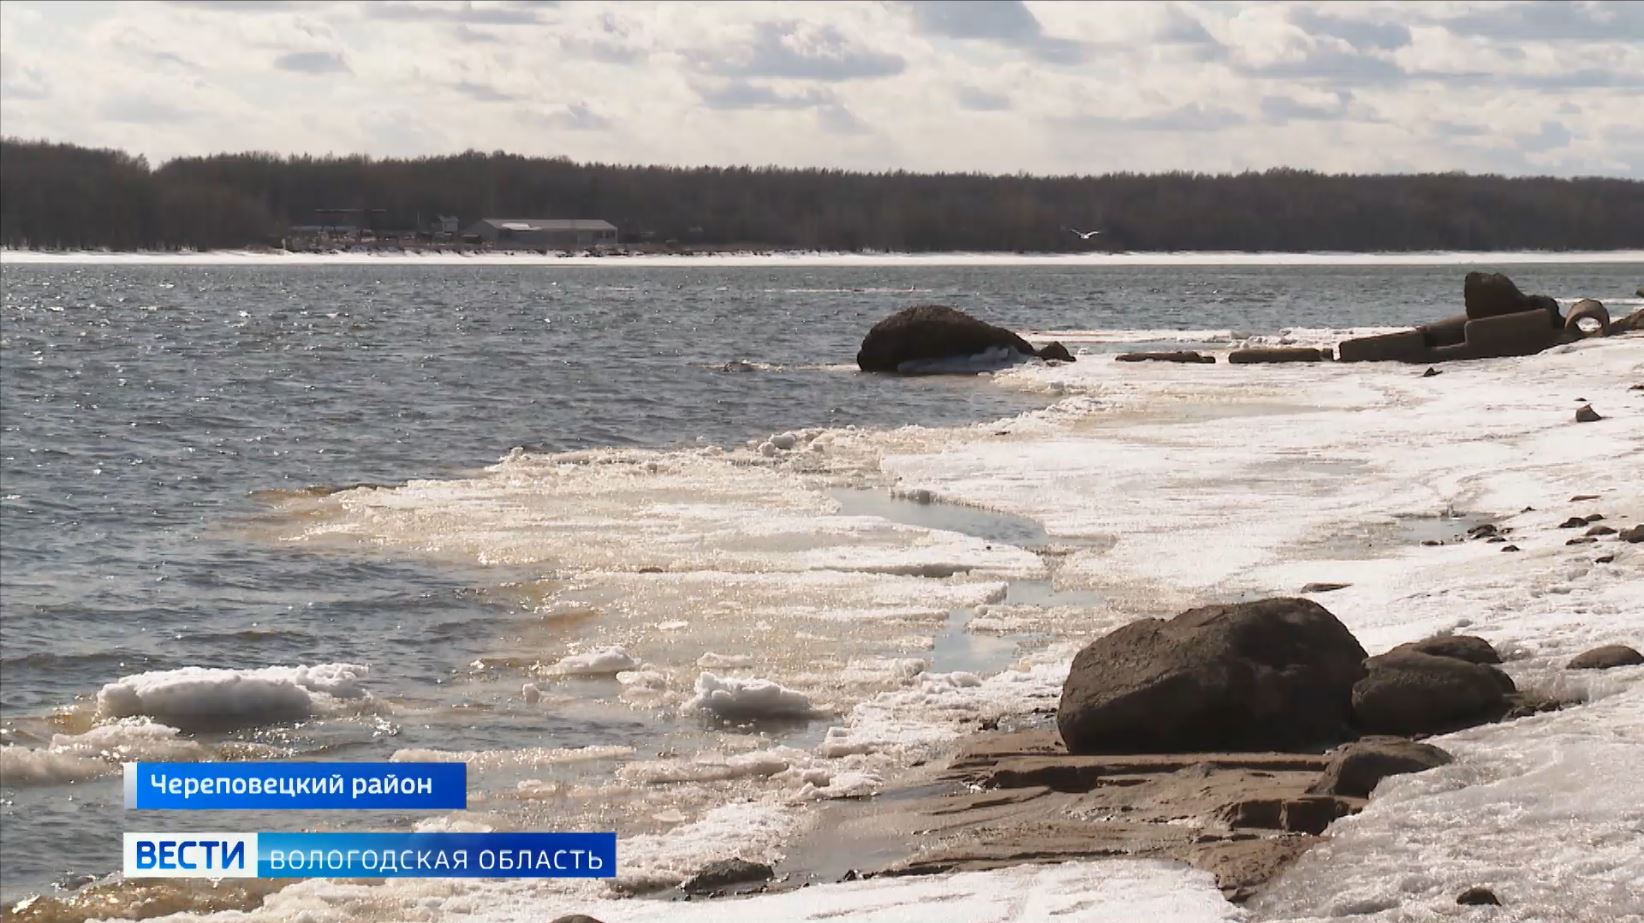 Запрет выхода на лед на рыбинском водохранилище